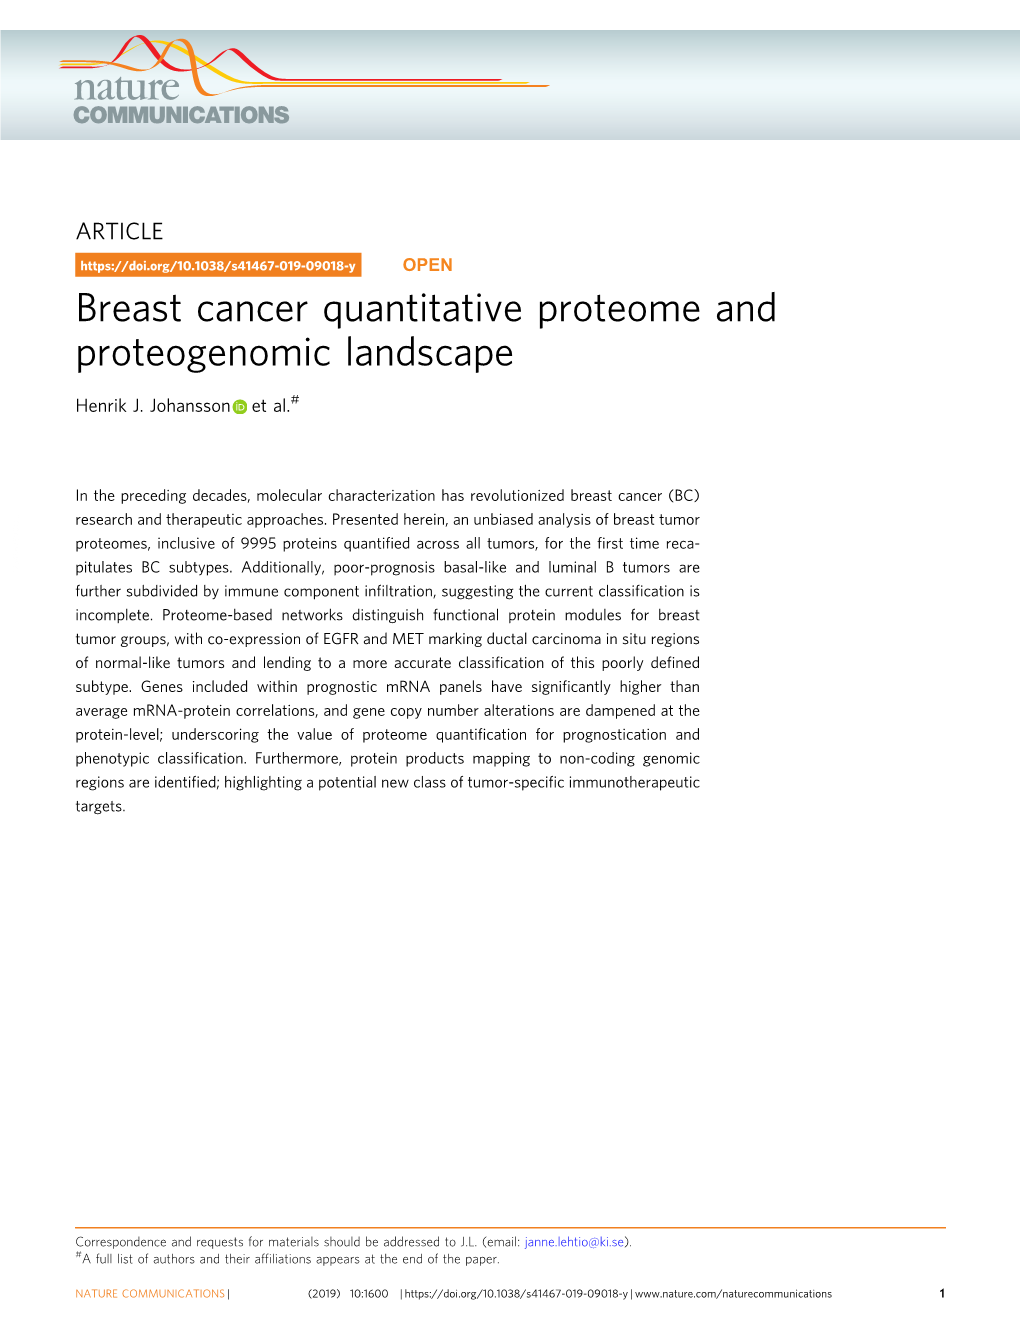 Breast Cancer Quantitative Proteome and Proteogenomic Landscape